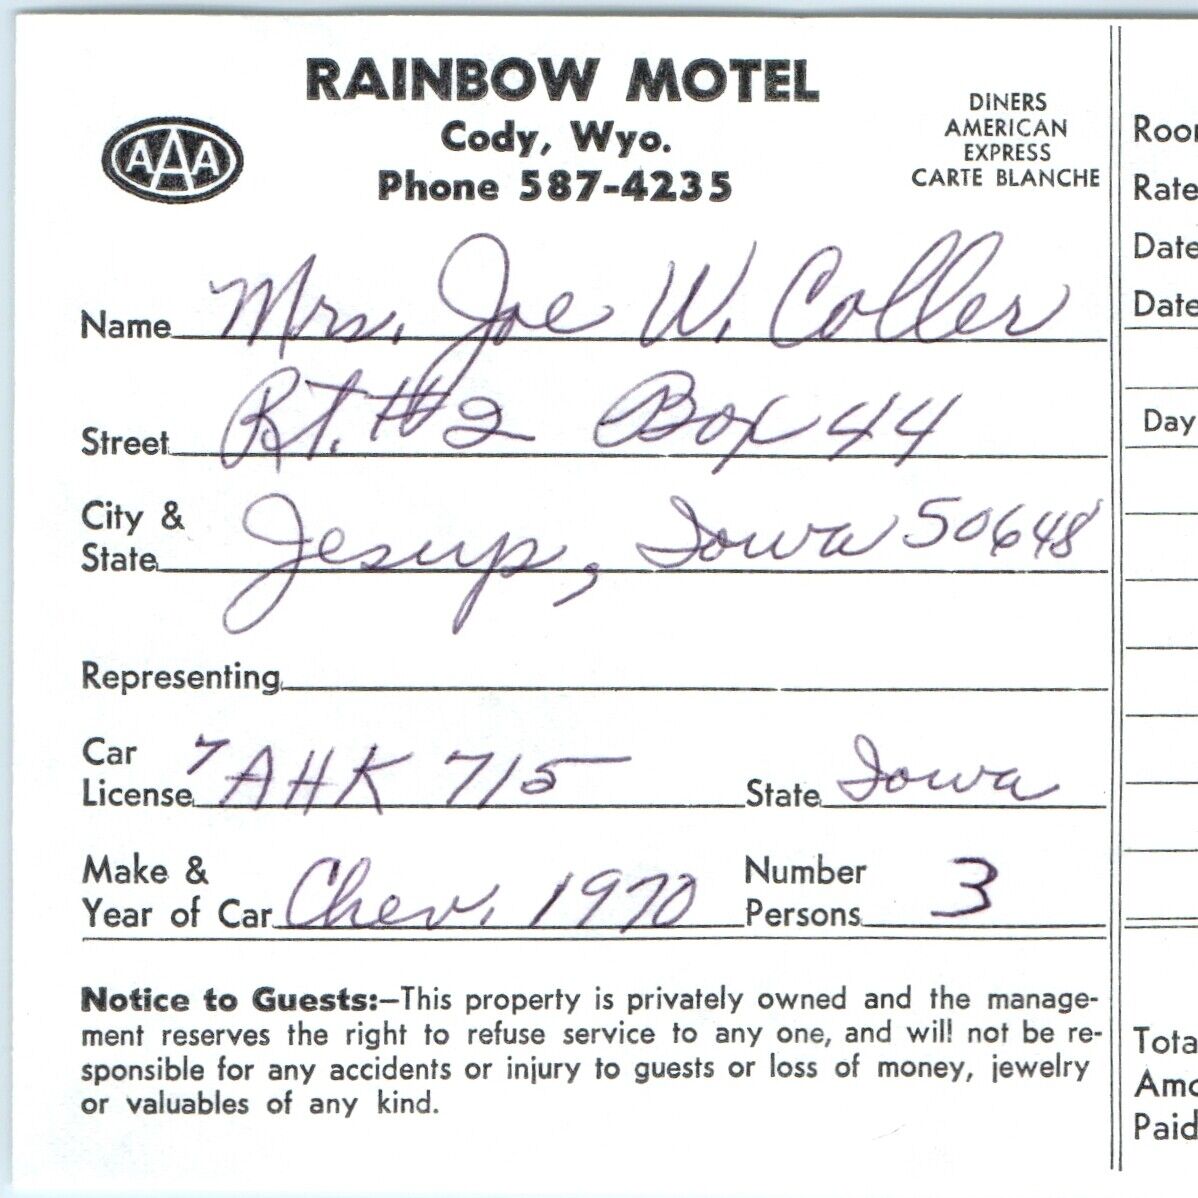 1975 Cody, Wyoming Rainbow Motel Registration Receipt Ephemera Vtg Hotel 2B